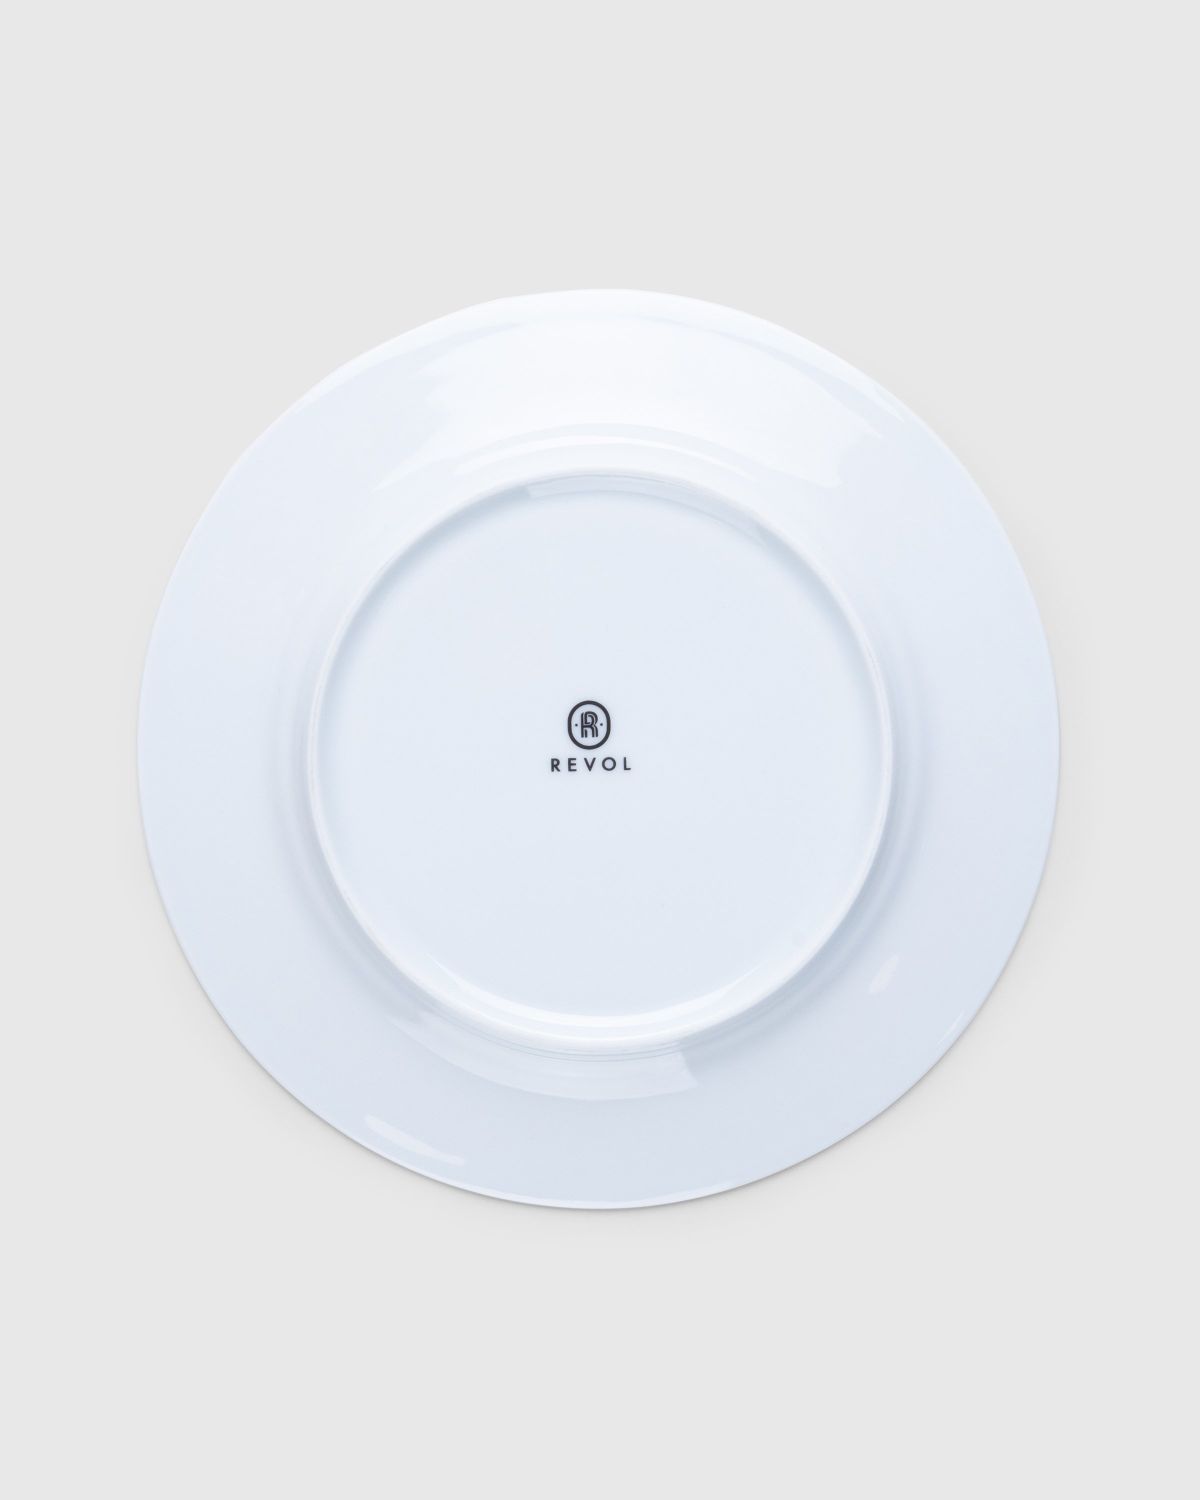 Café de Flore x Highsnobiety – Plate - Ceramics - White - Image 2